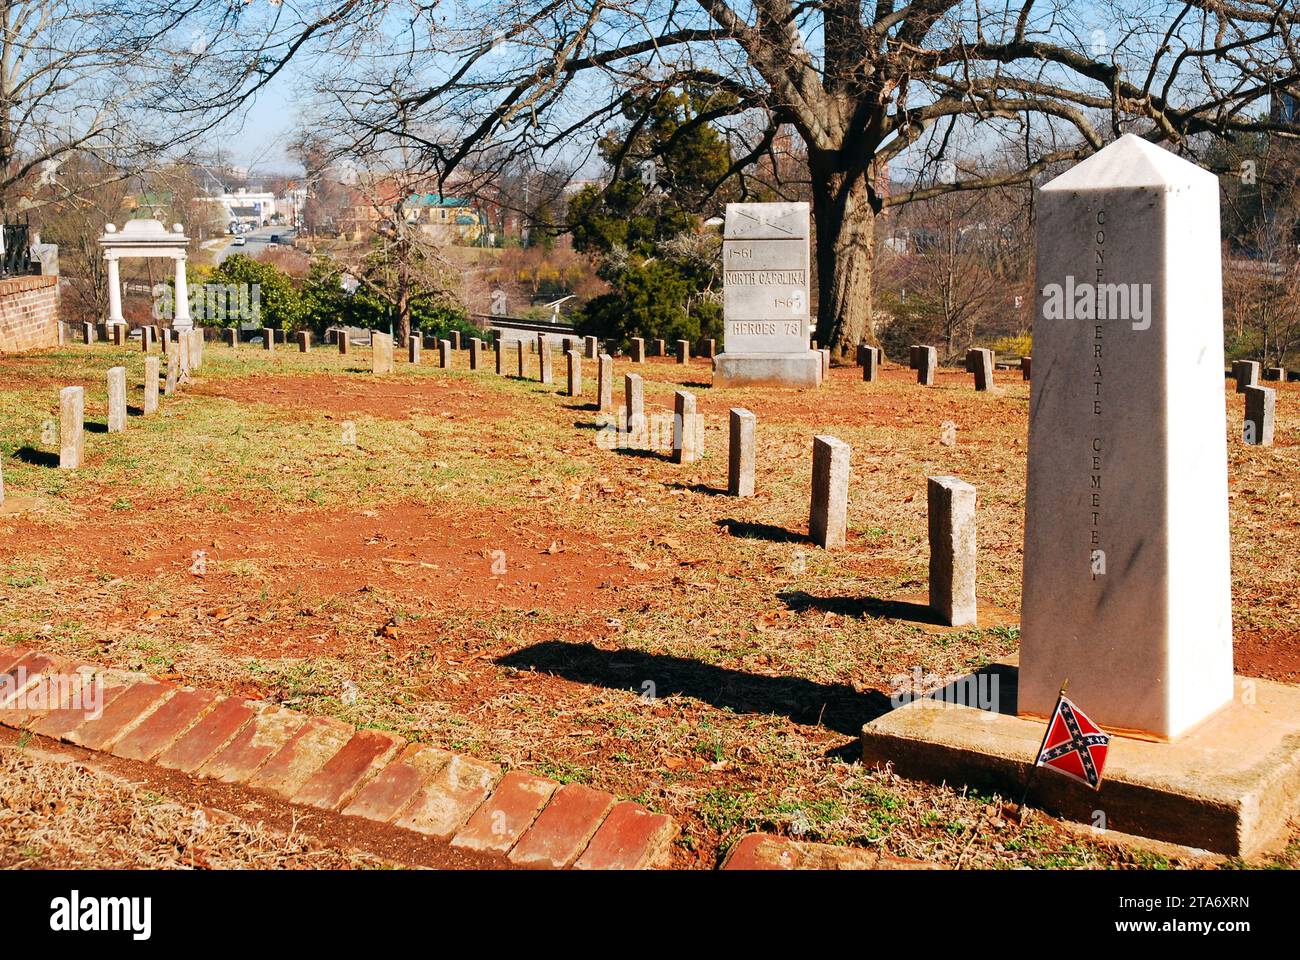 Un petit drapeau confédéré est planté près d'une tombe et d'un mémorial aux soldats tués en combattant pour le sud pendant la guerre de Sécession Banque D'Images